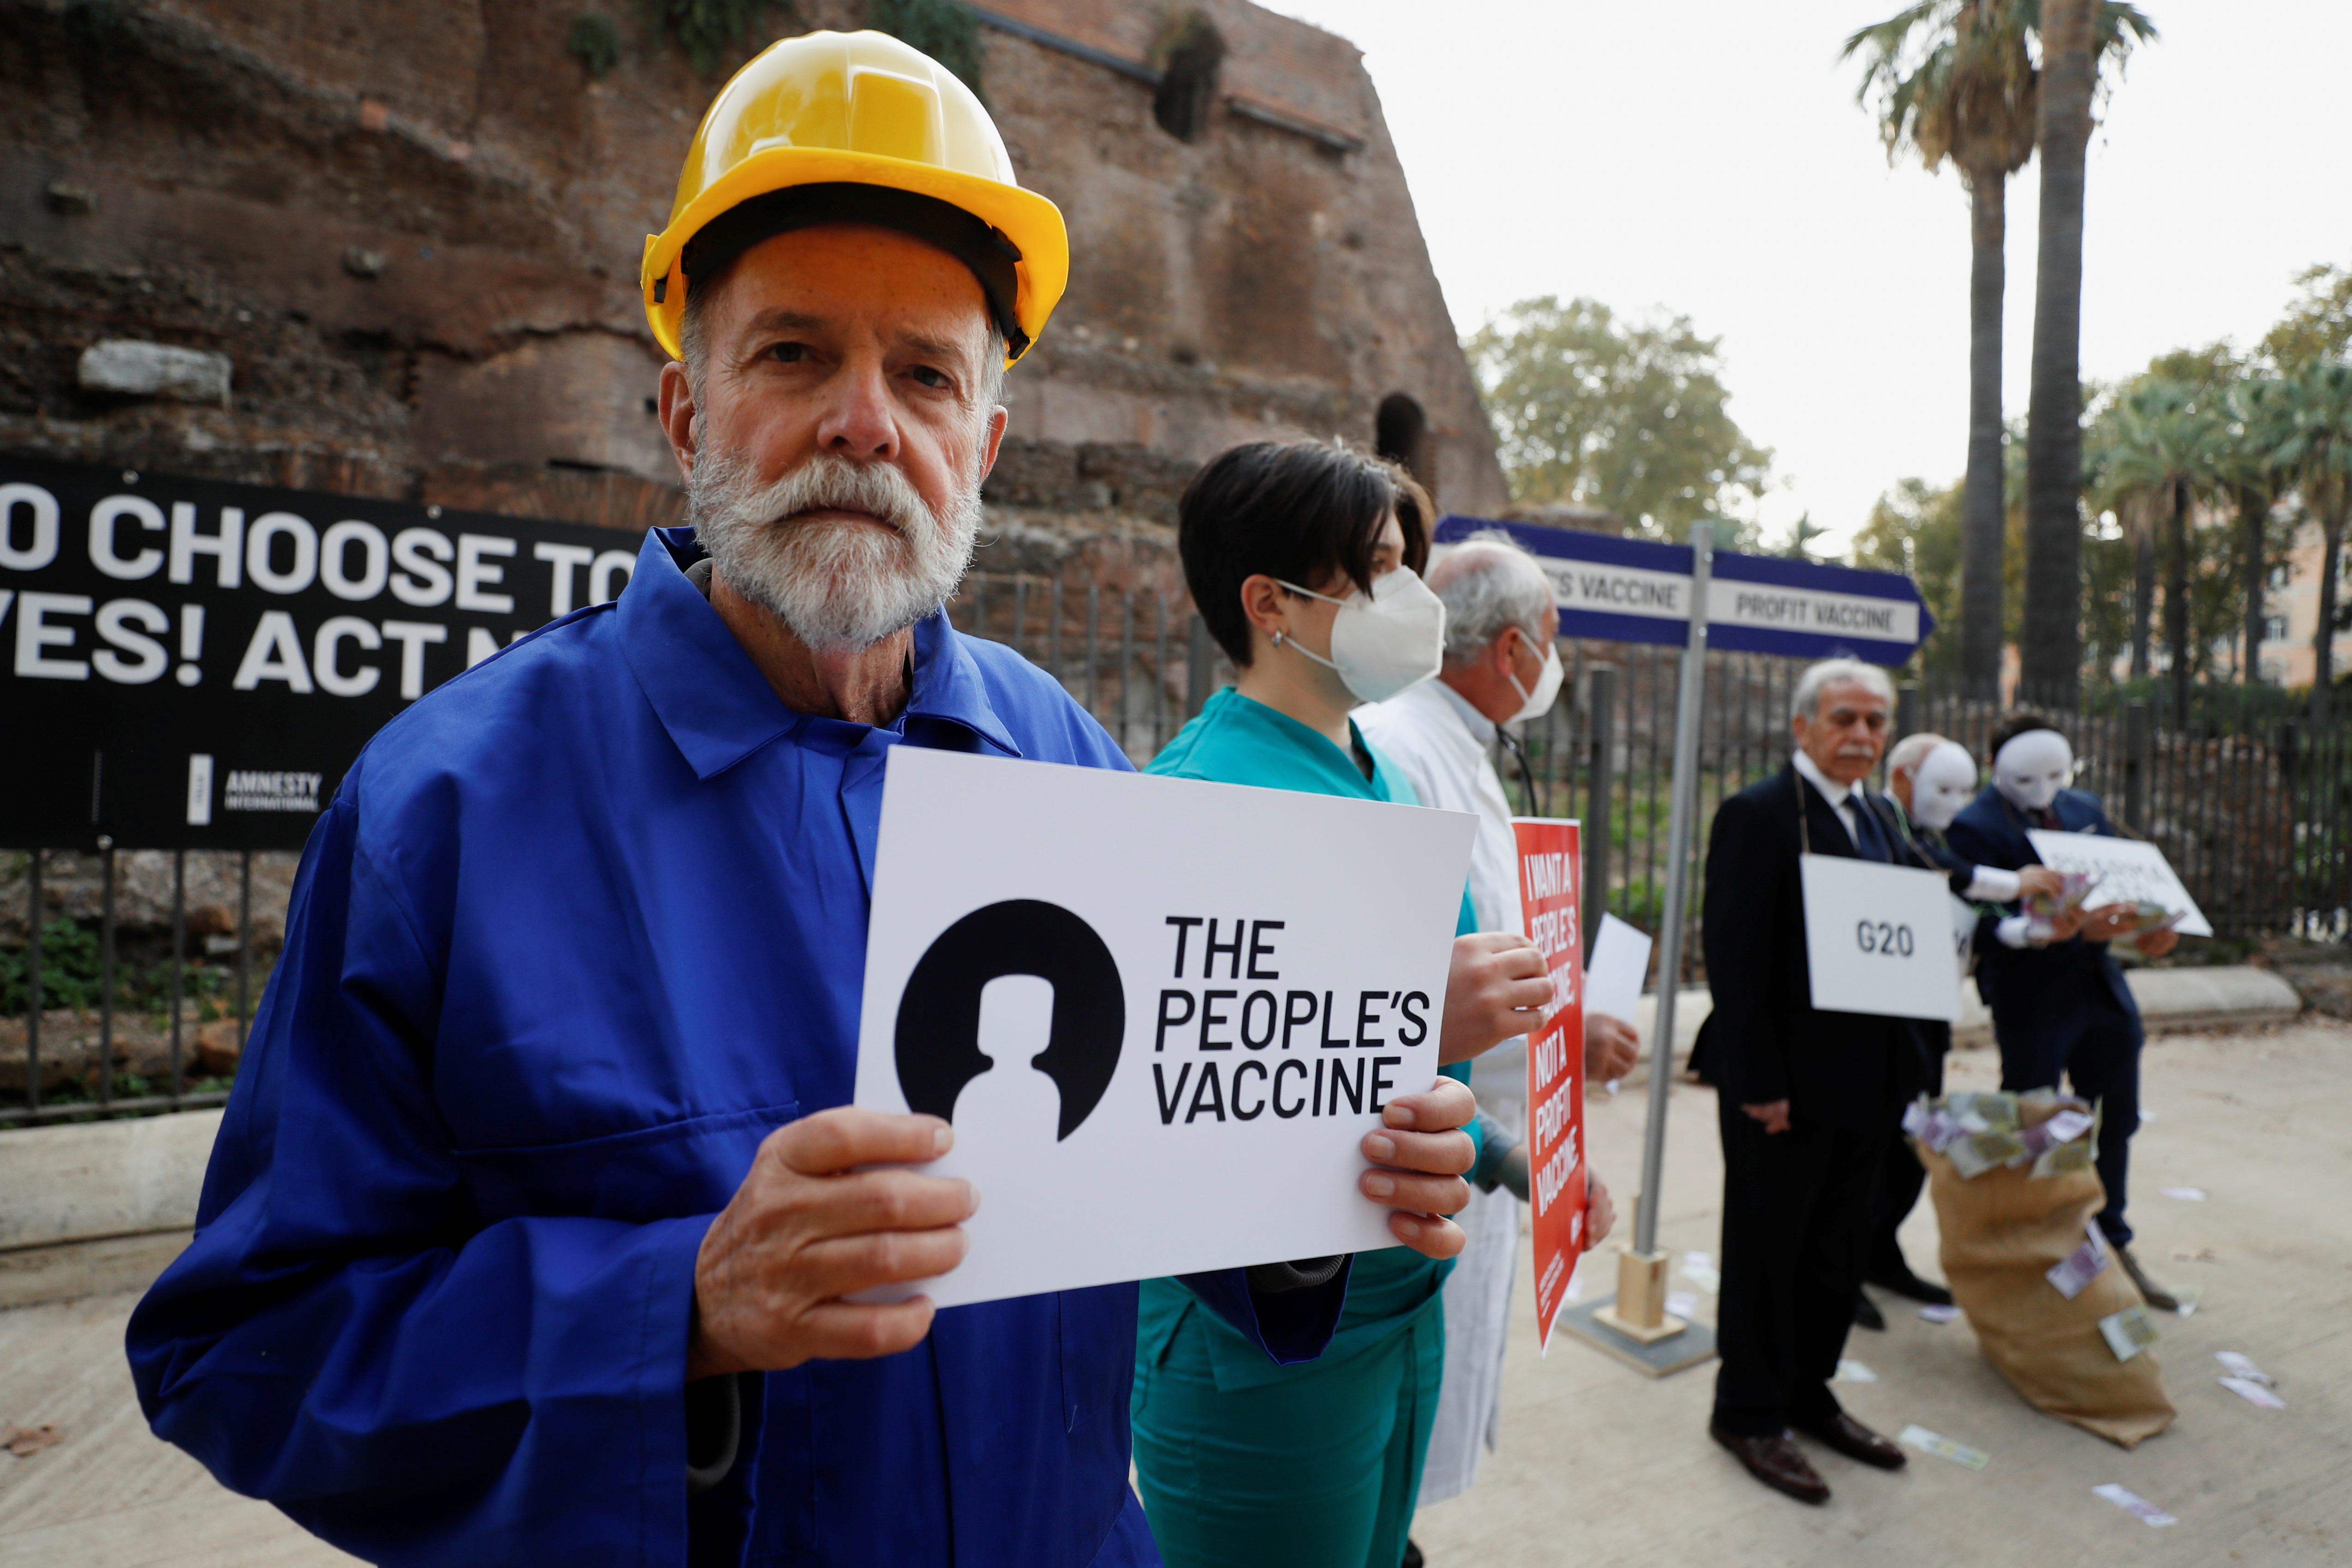 Activistas de Oxfam, Amnistía Internacional y Emergency durante una manifestación para exigir a los líderes que pongan fin a la desigualdad mundial en el acceso a las vacunas y los tratamientos para el COVID-19 durante el G20 de octubre 2021 en Roma (REUTERS/ Yara Nardi)